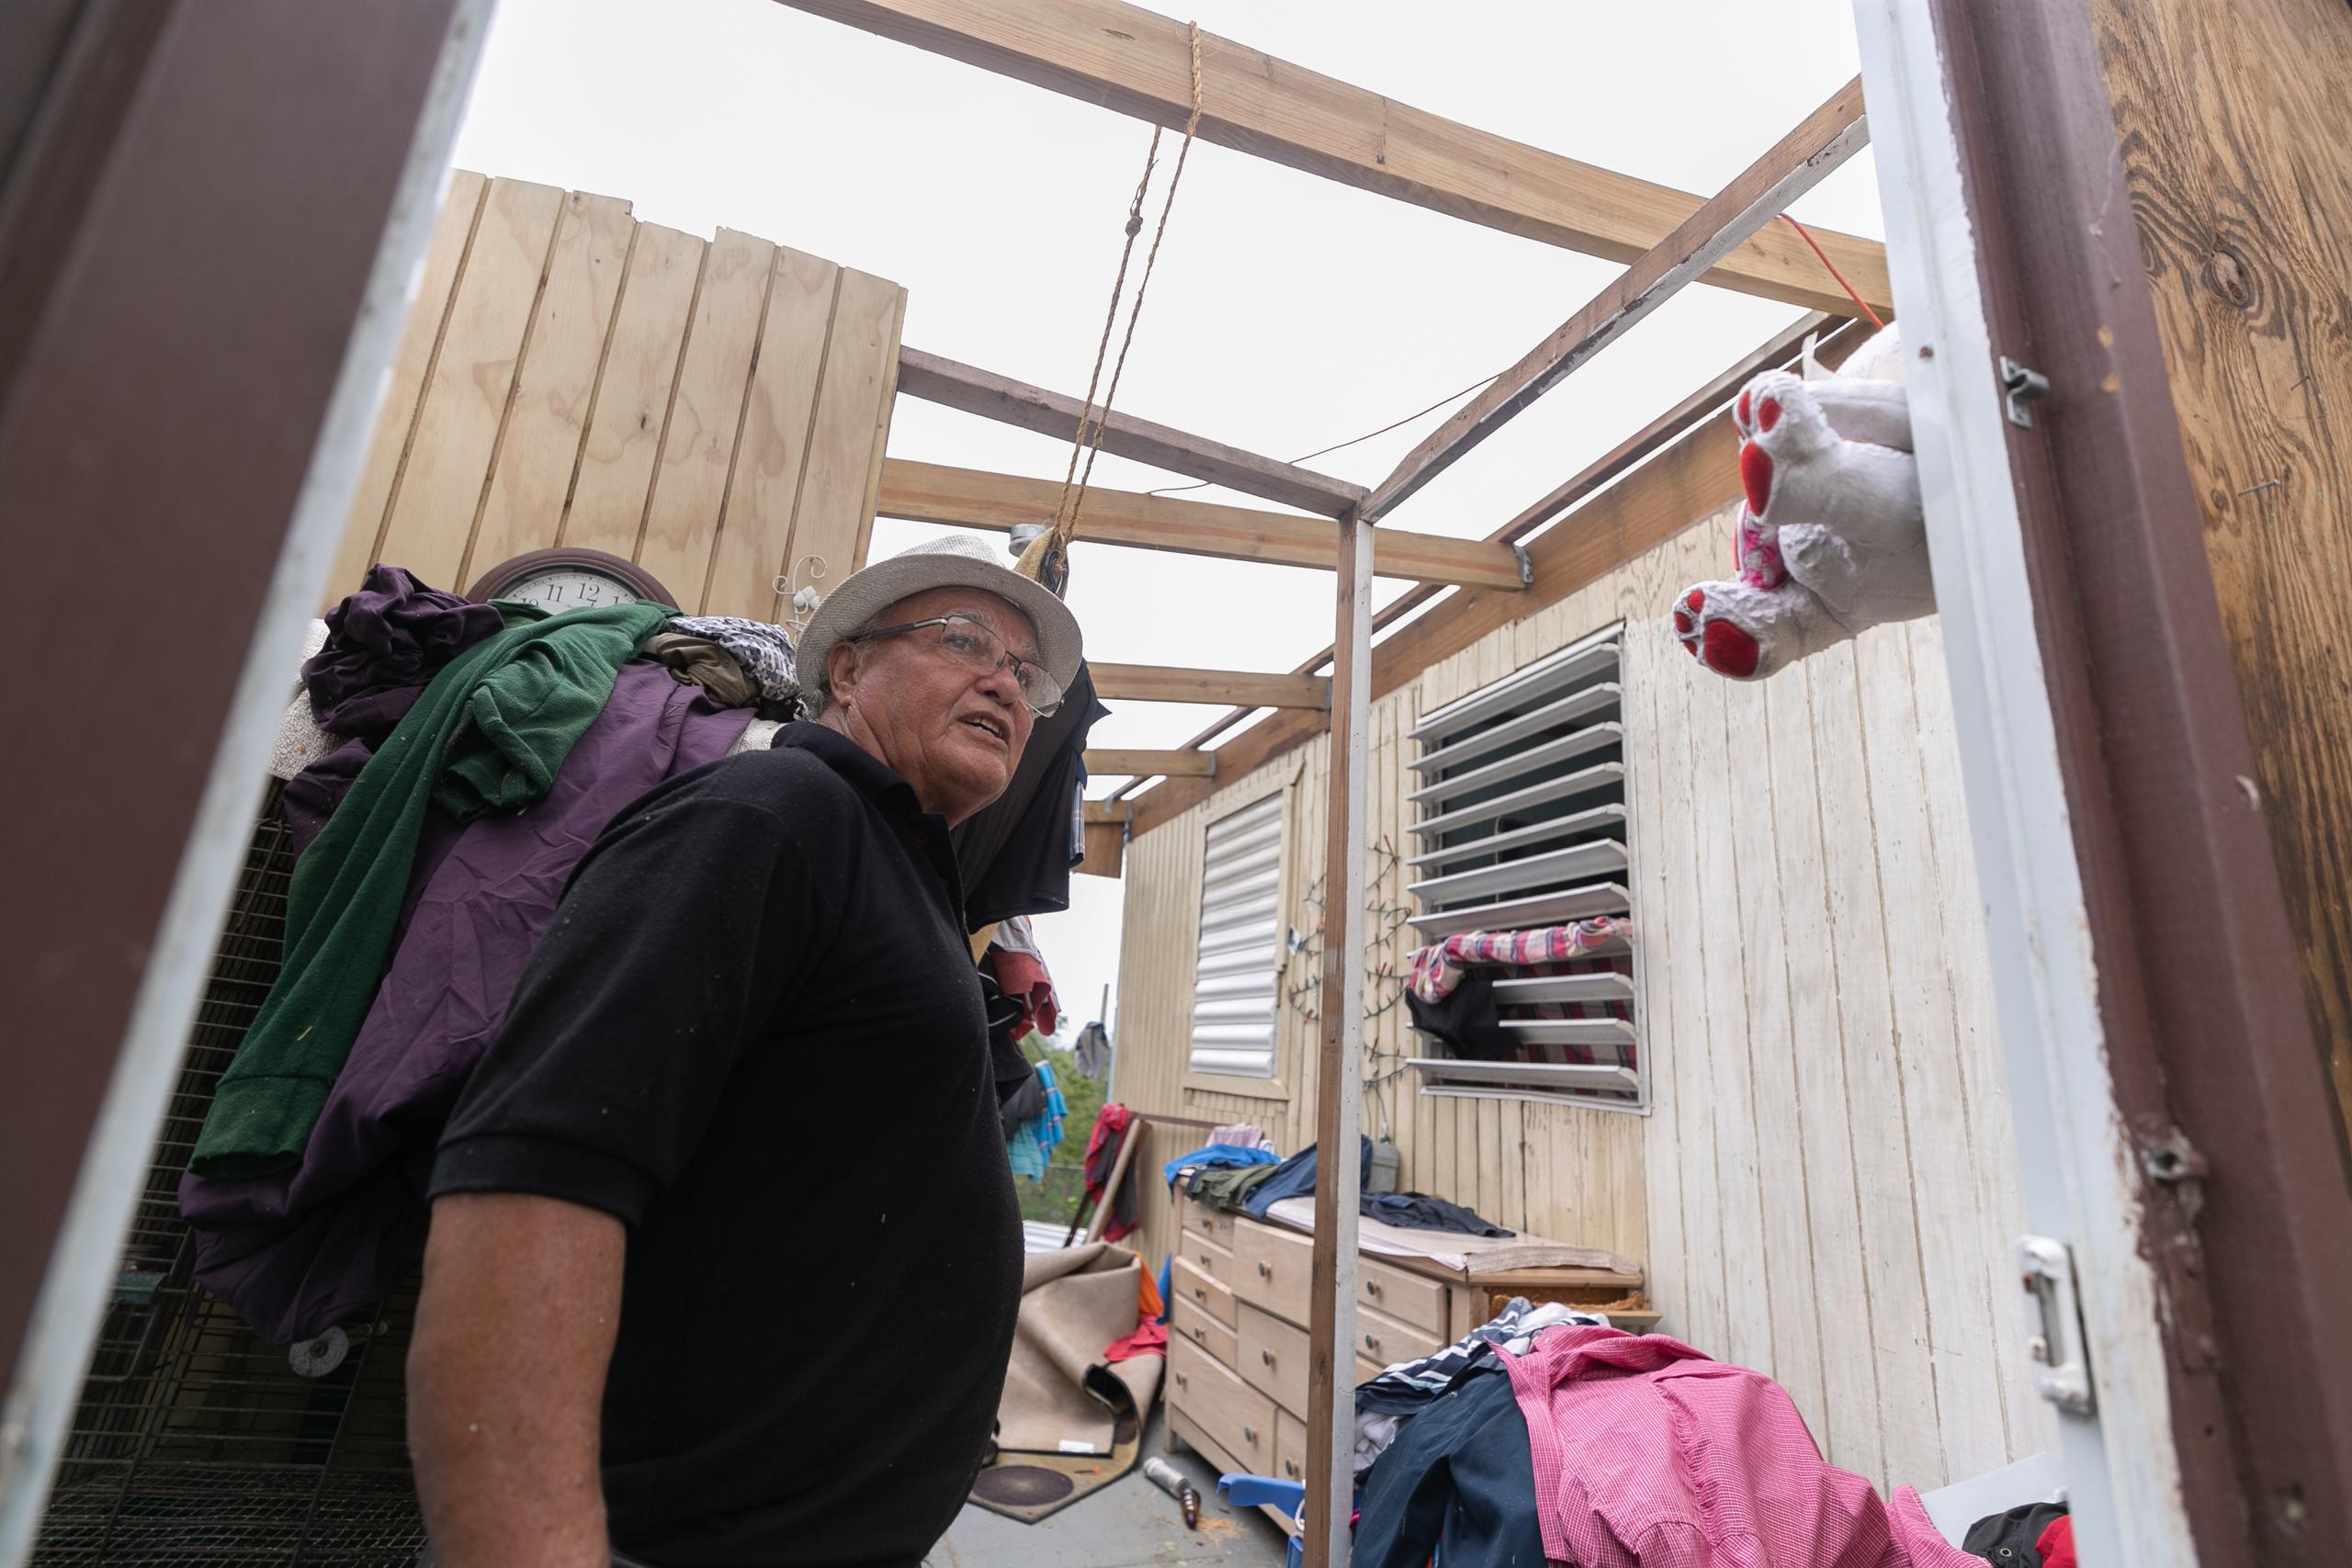 Vélez informó que hace cerca de un mes recibió una visita de personal de FEMA para la reclamación de ayuda económica por los daños del huracán María en el 2017.